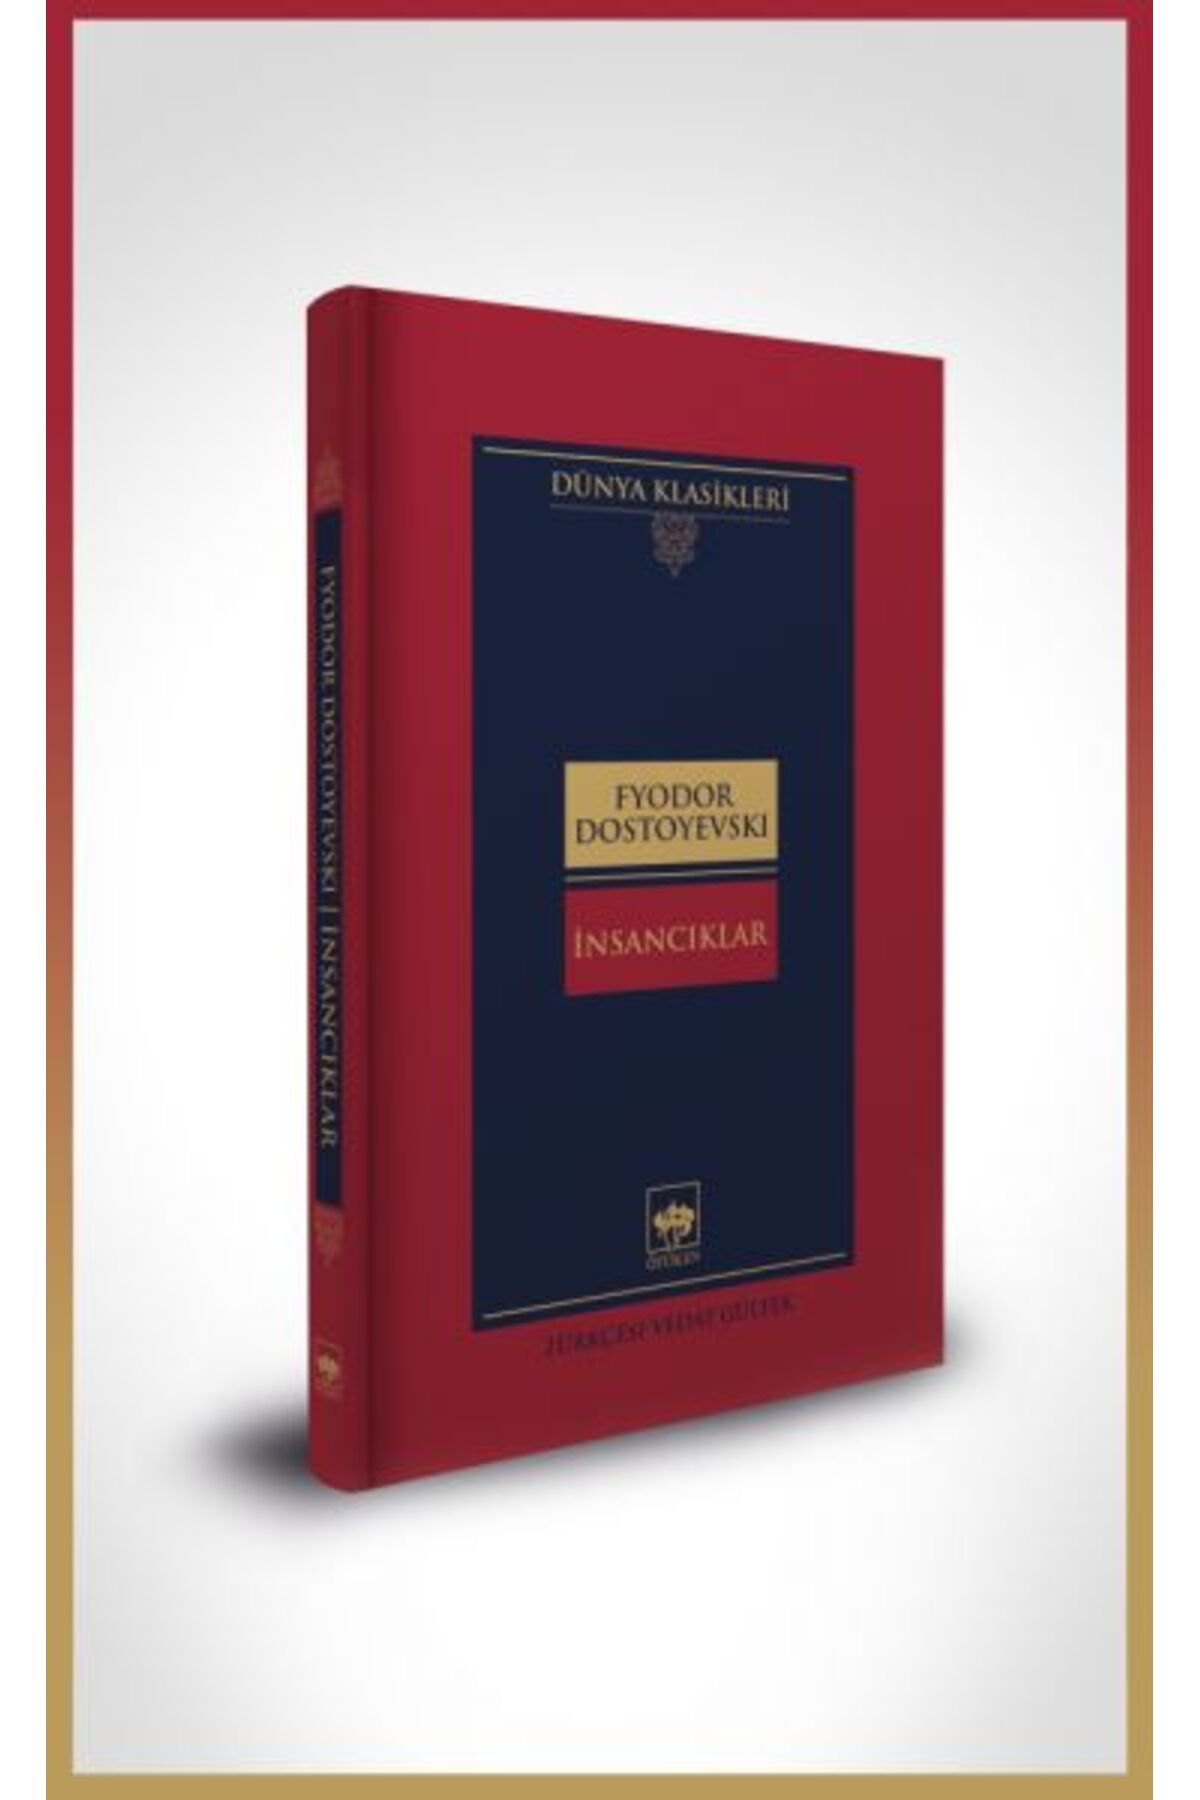 Ötüken Yayınları Insancıklar-dünya Klasikleri (CİLTLİ)